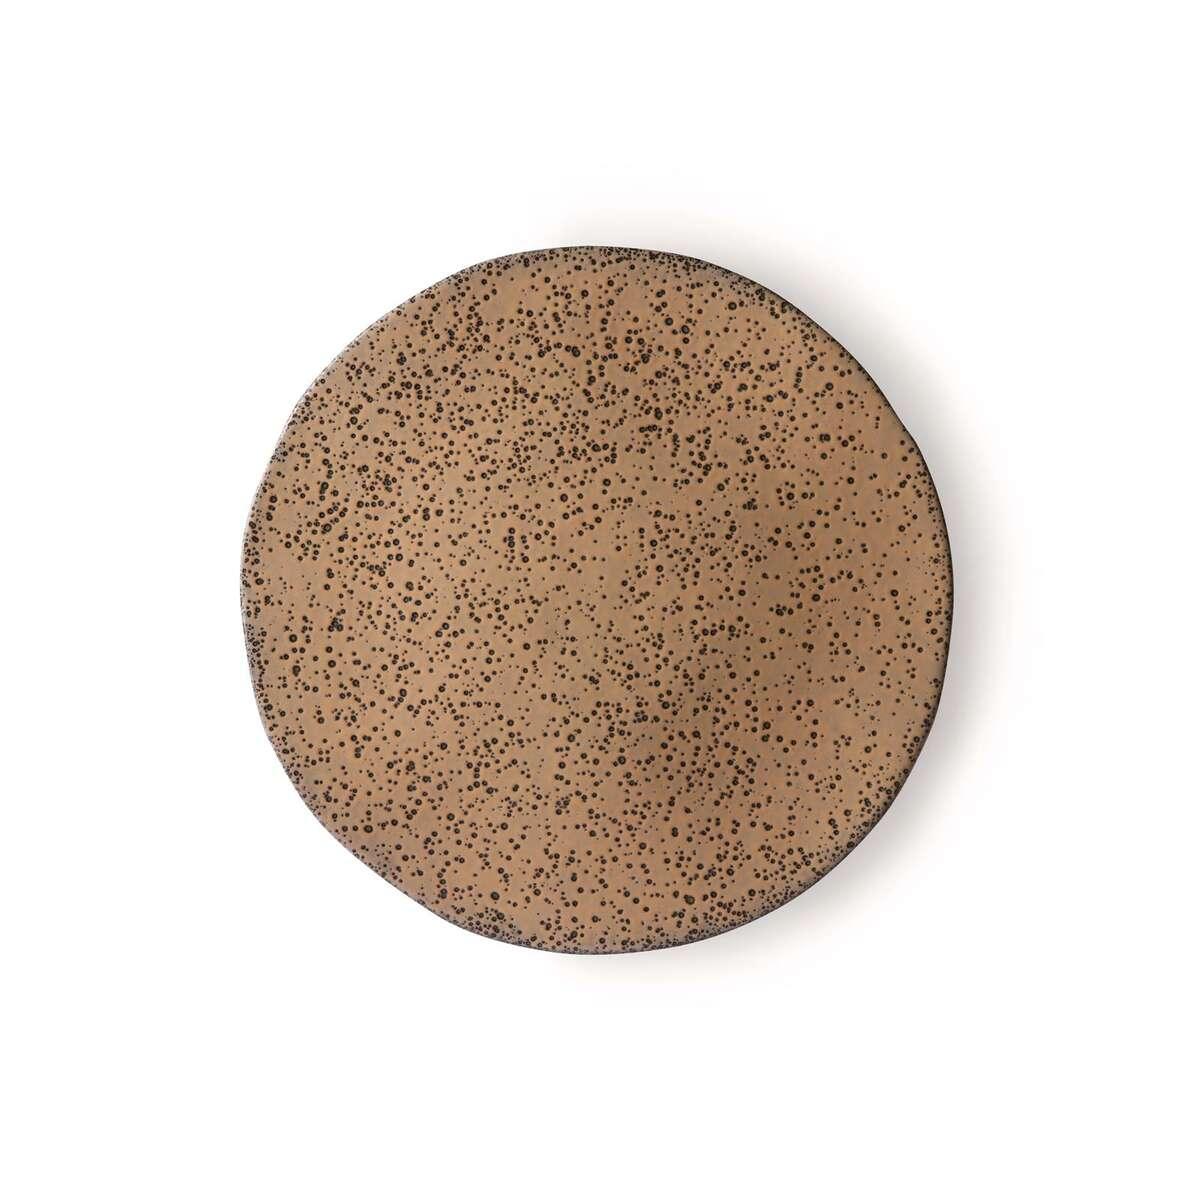 Ceramika gradientowa beżowy talerz, HKliving, Eye on Design